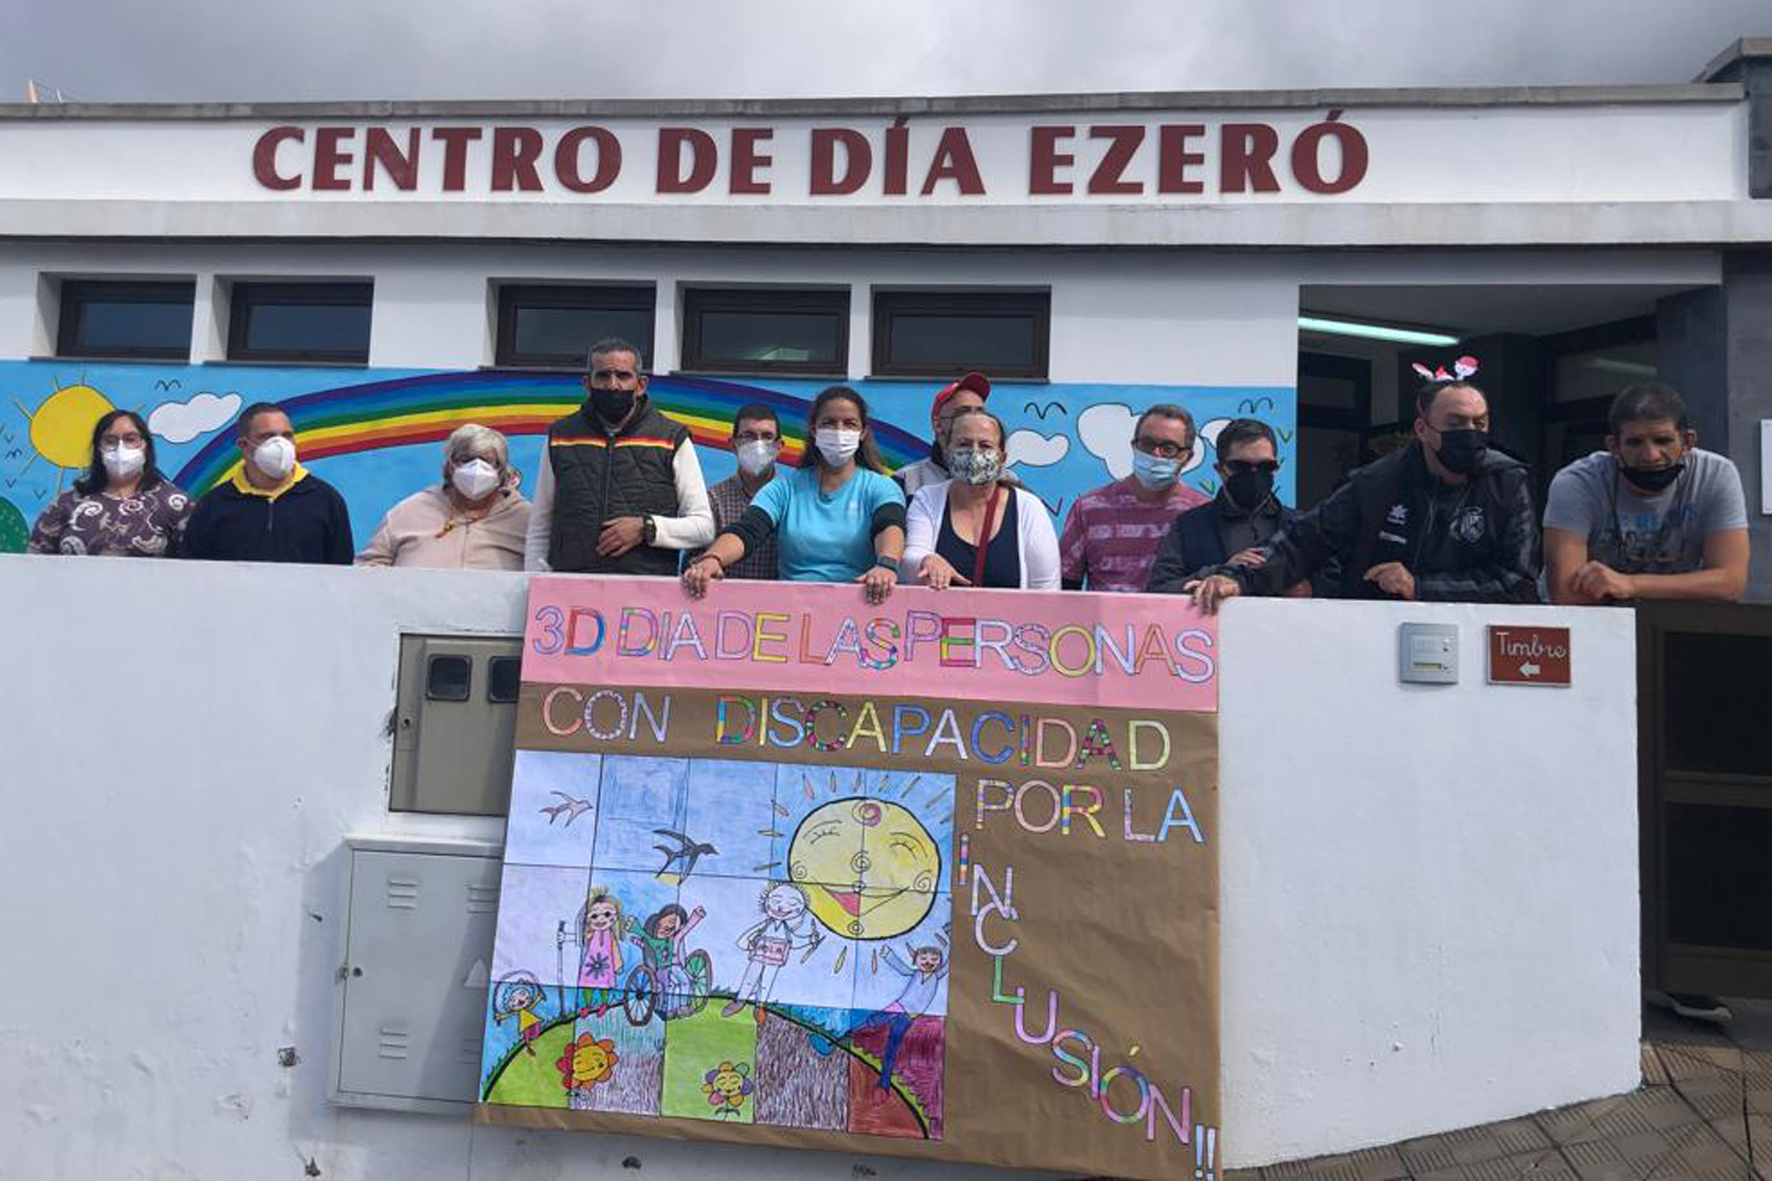 Usuarios del Centro de atención a personas con Discapacidad Ezeró realizan un mural conmemorativo del Dia Internacional De Las Personas Con Discapacidad